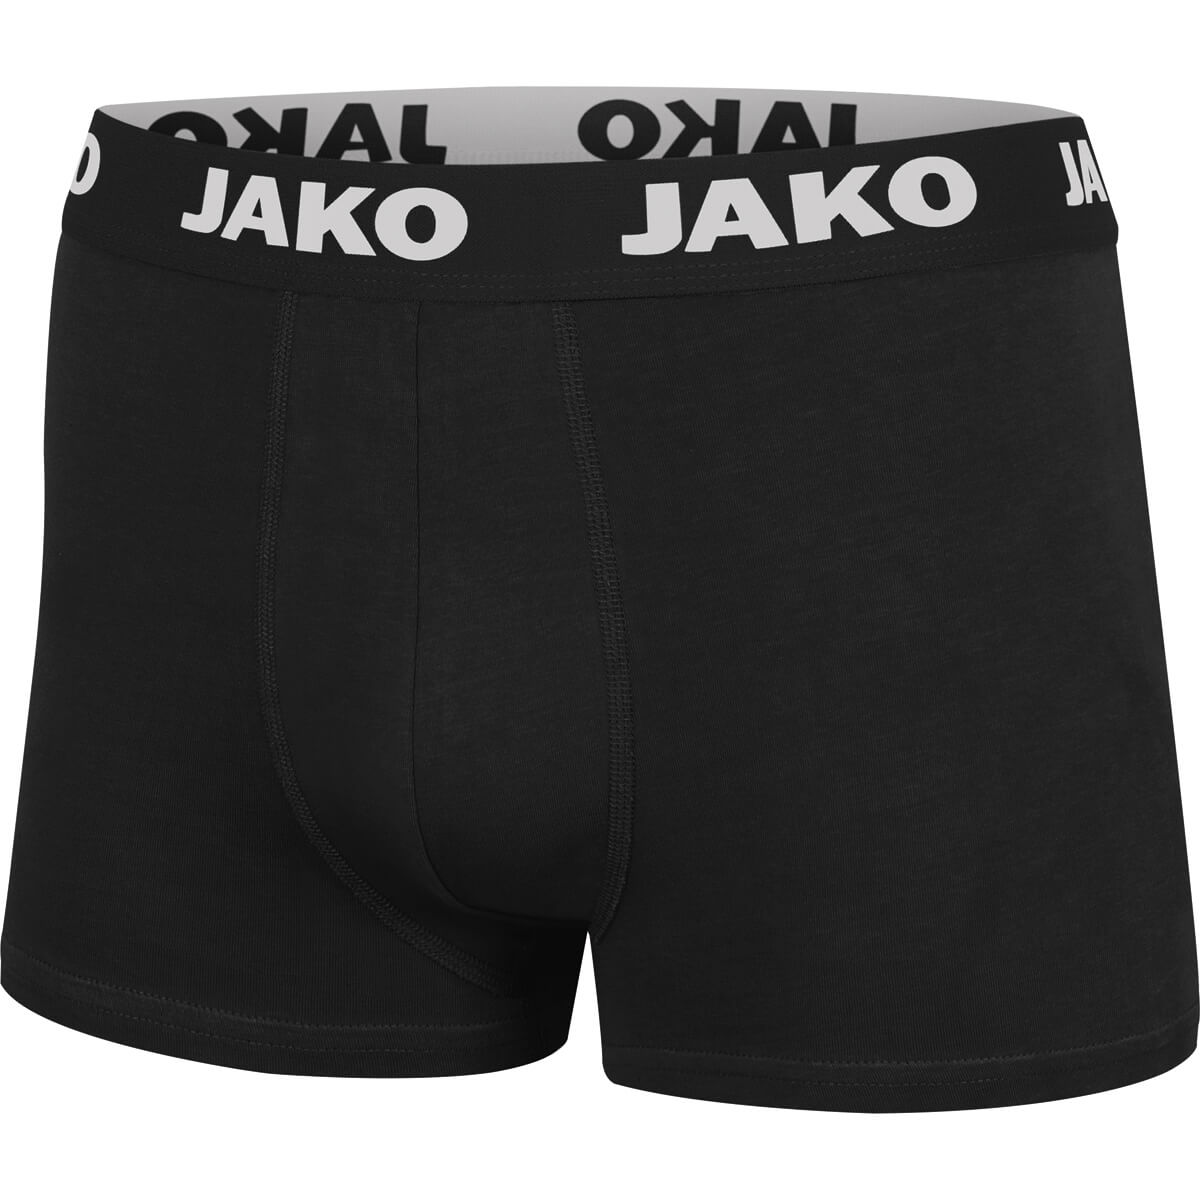 JAKO 6204-08 Basic Boxer Shorts 2-pack Black